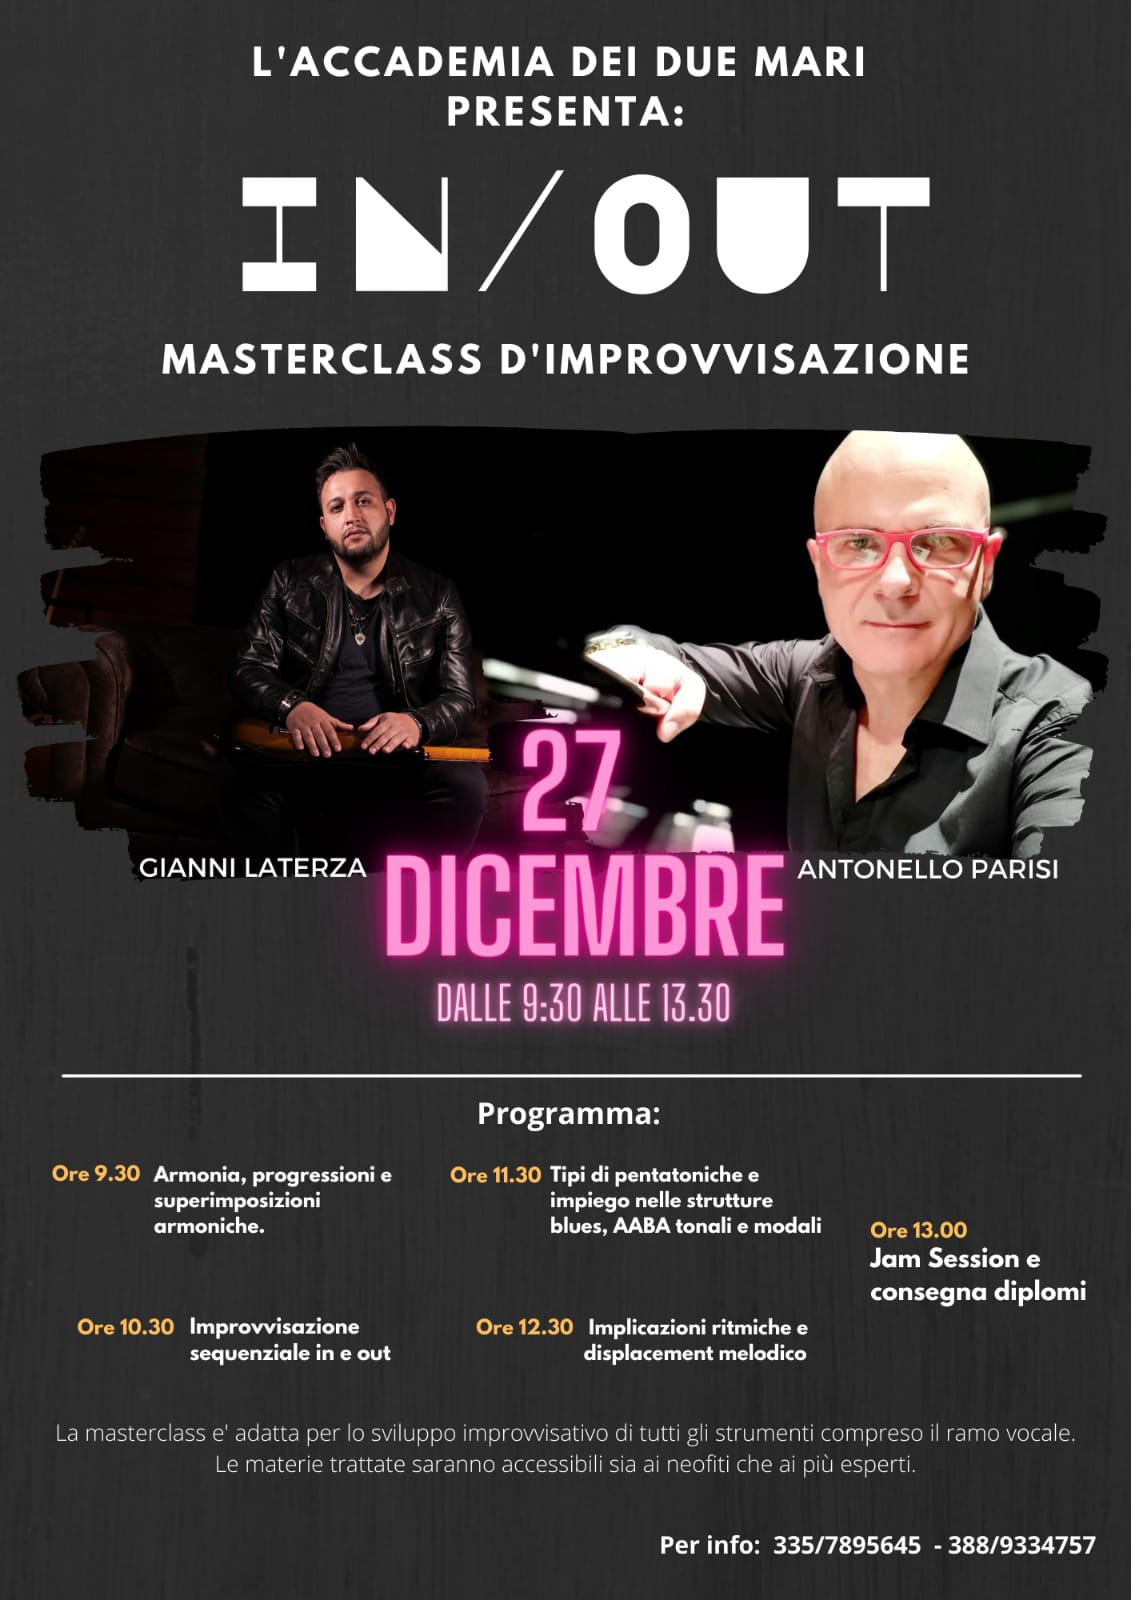 Masterclass improvvisazione. A Taranto la terza Masterclasses dedicata all’ improvvisazione tenuta dai Maestri Antonello Parisi e Gianni Laterza